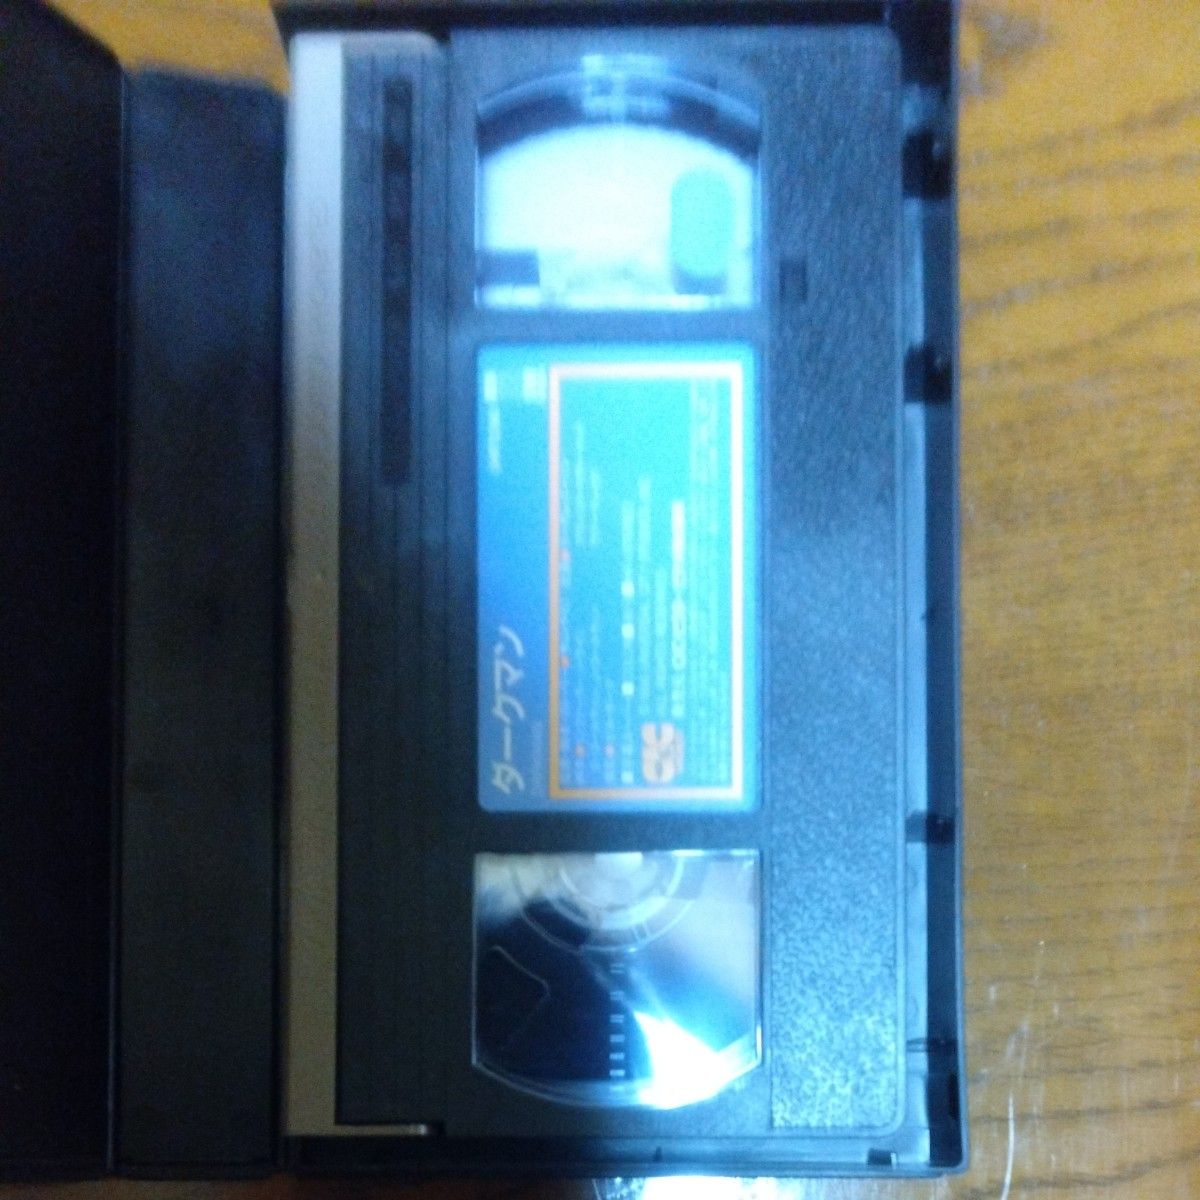 映画『ダークマン』(1991年日本公開) VHS ビデオテープ